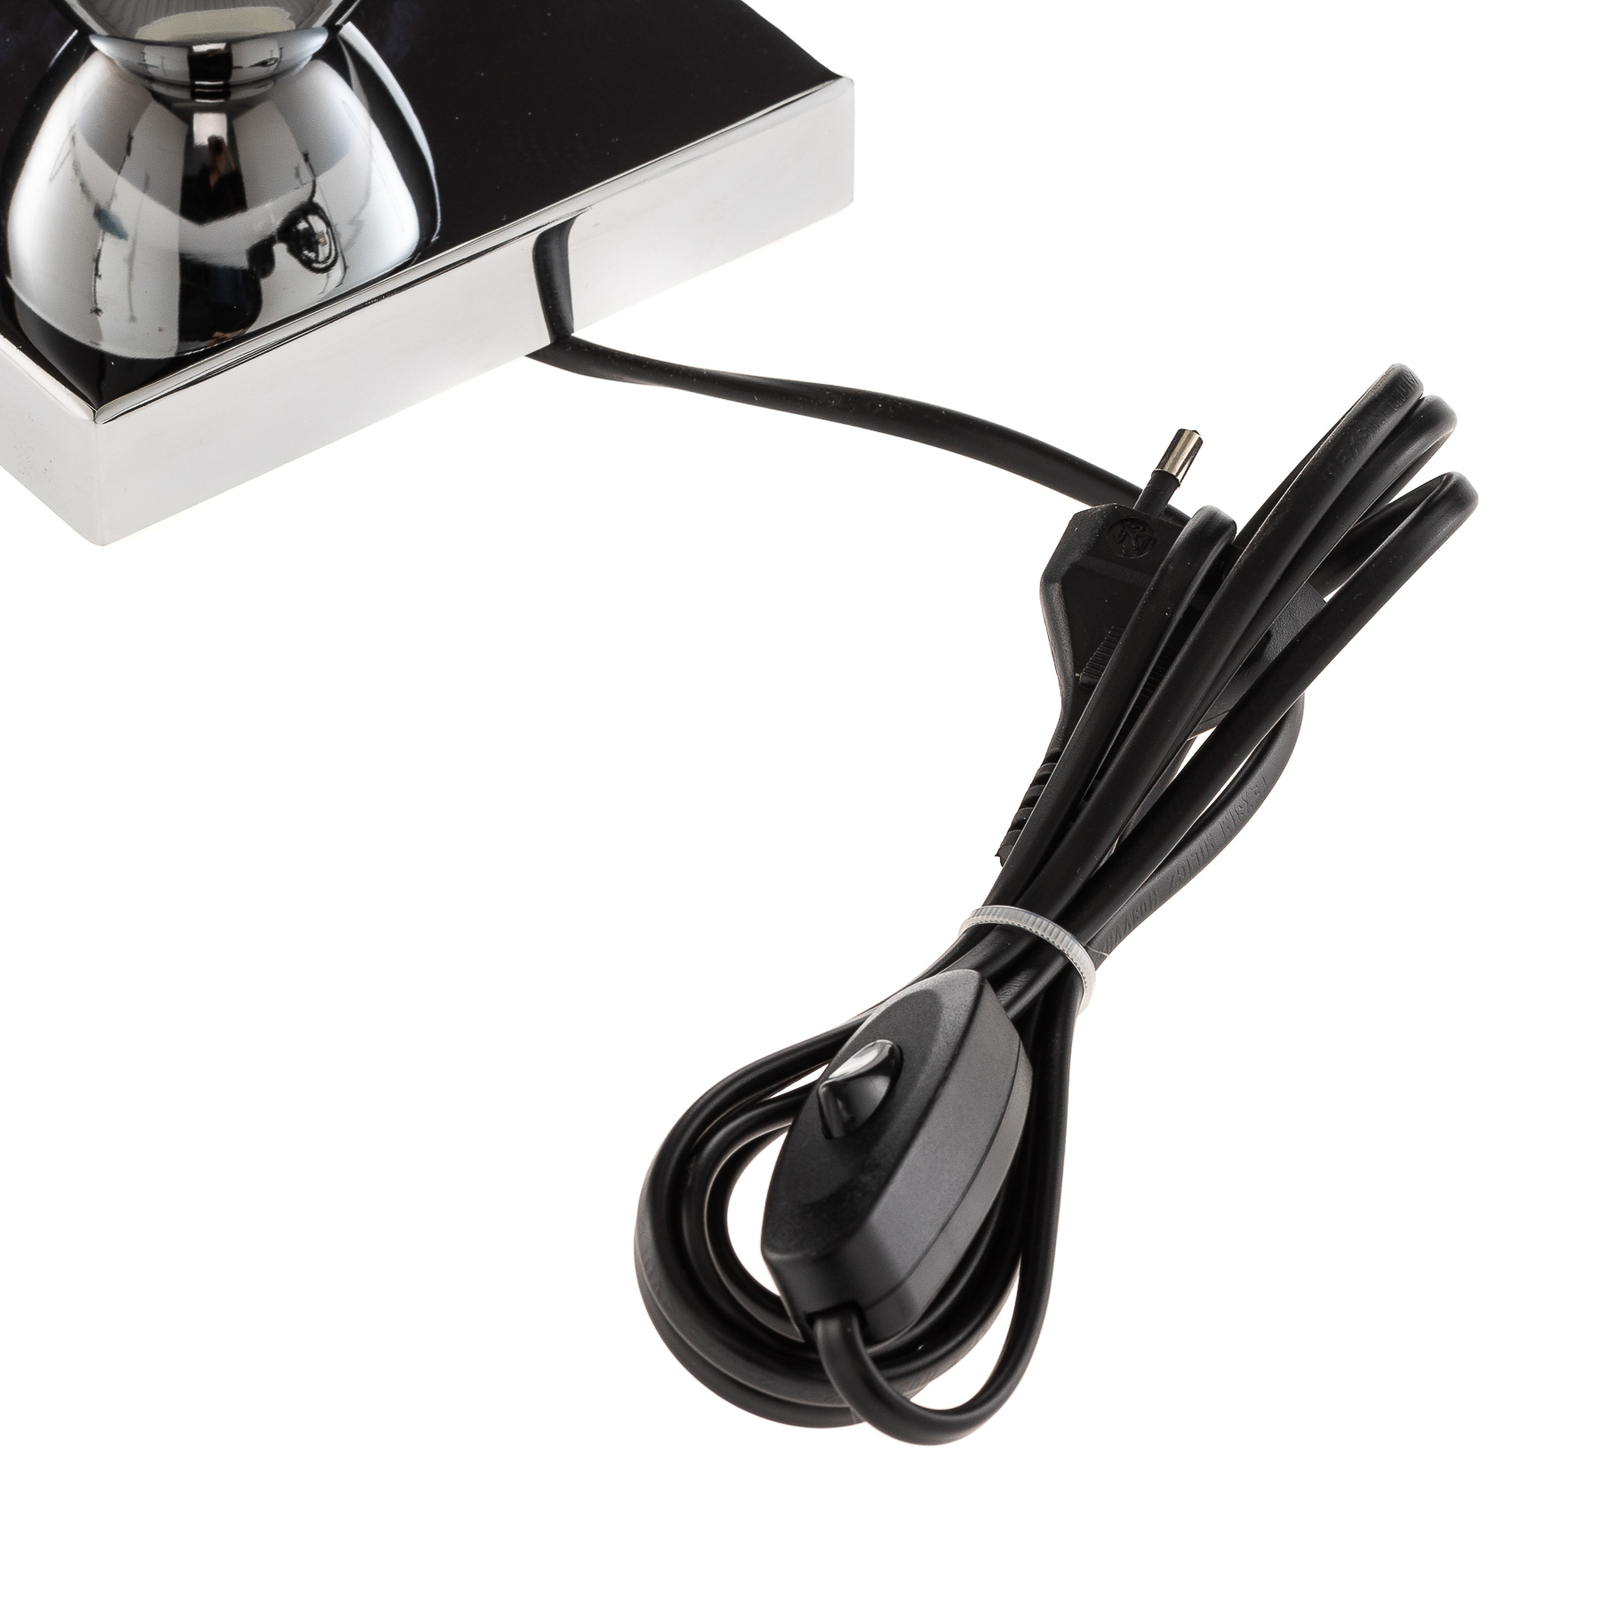 Lámpara de mesa Lund en blanco y negro, alto 70 cm